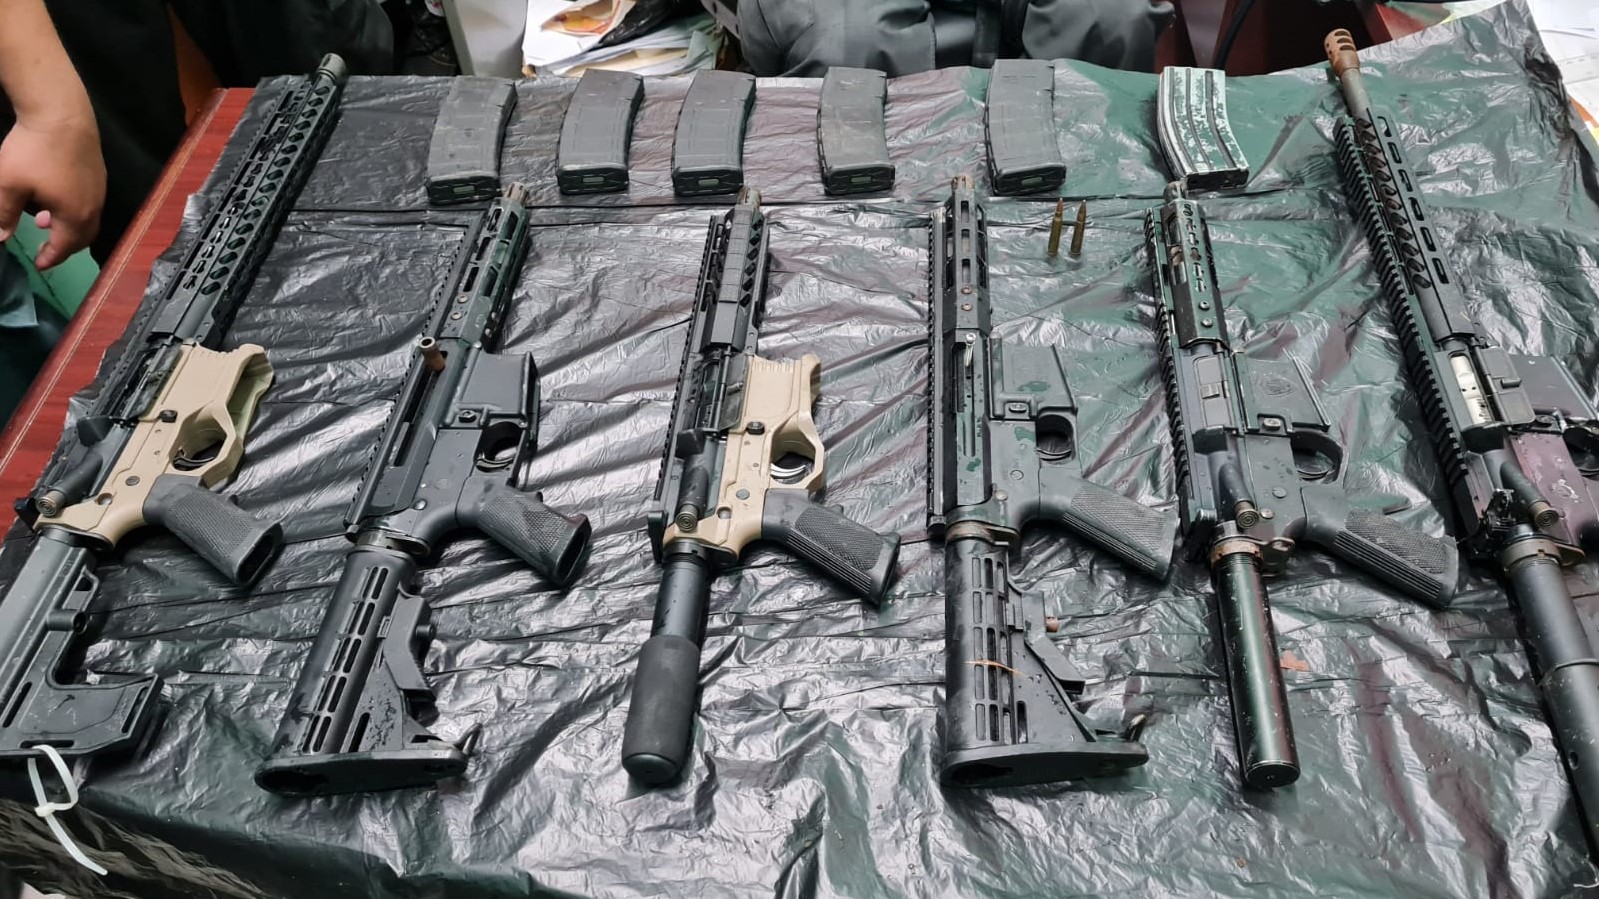 这些步枪是周四在库雷佩被警方缴获的。